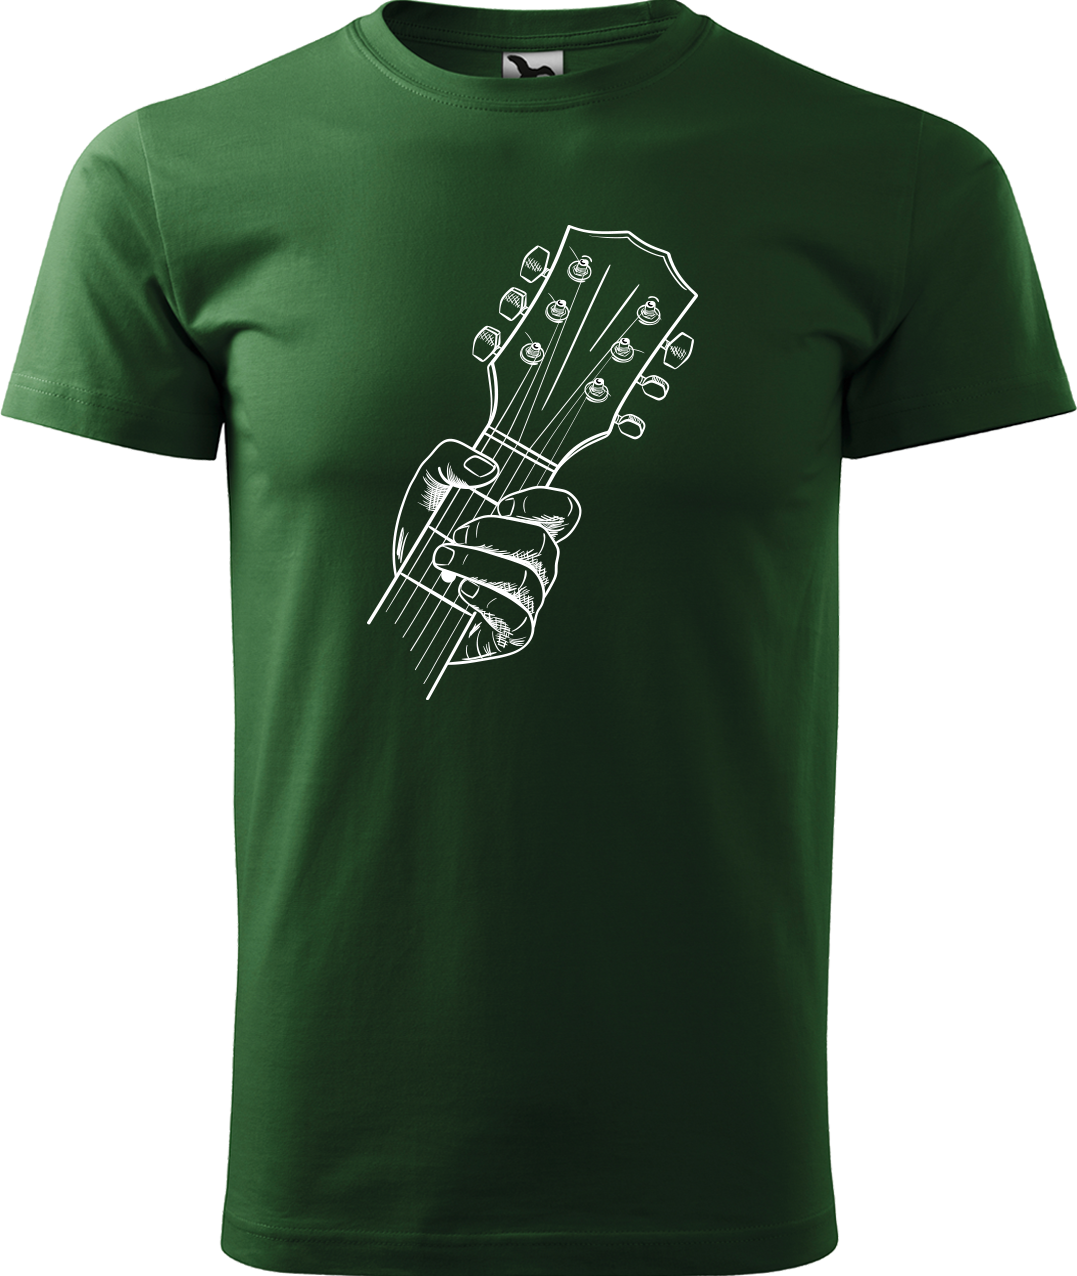 Pánské tričko s kytarou - Hlava kytary Velikost: XL, Barva: Lahvově zelená (06)